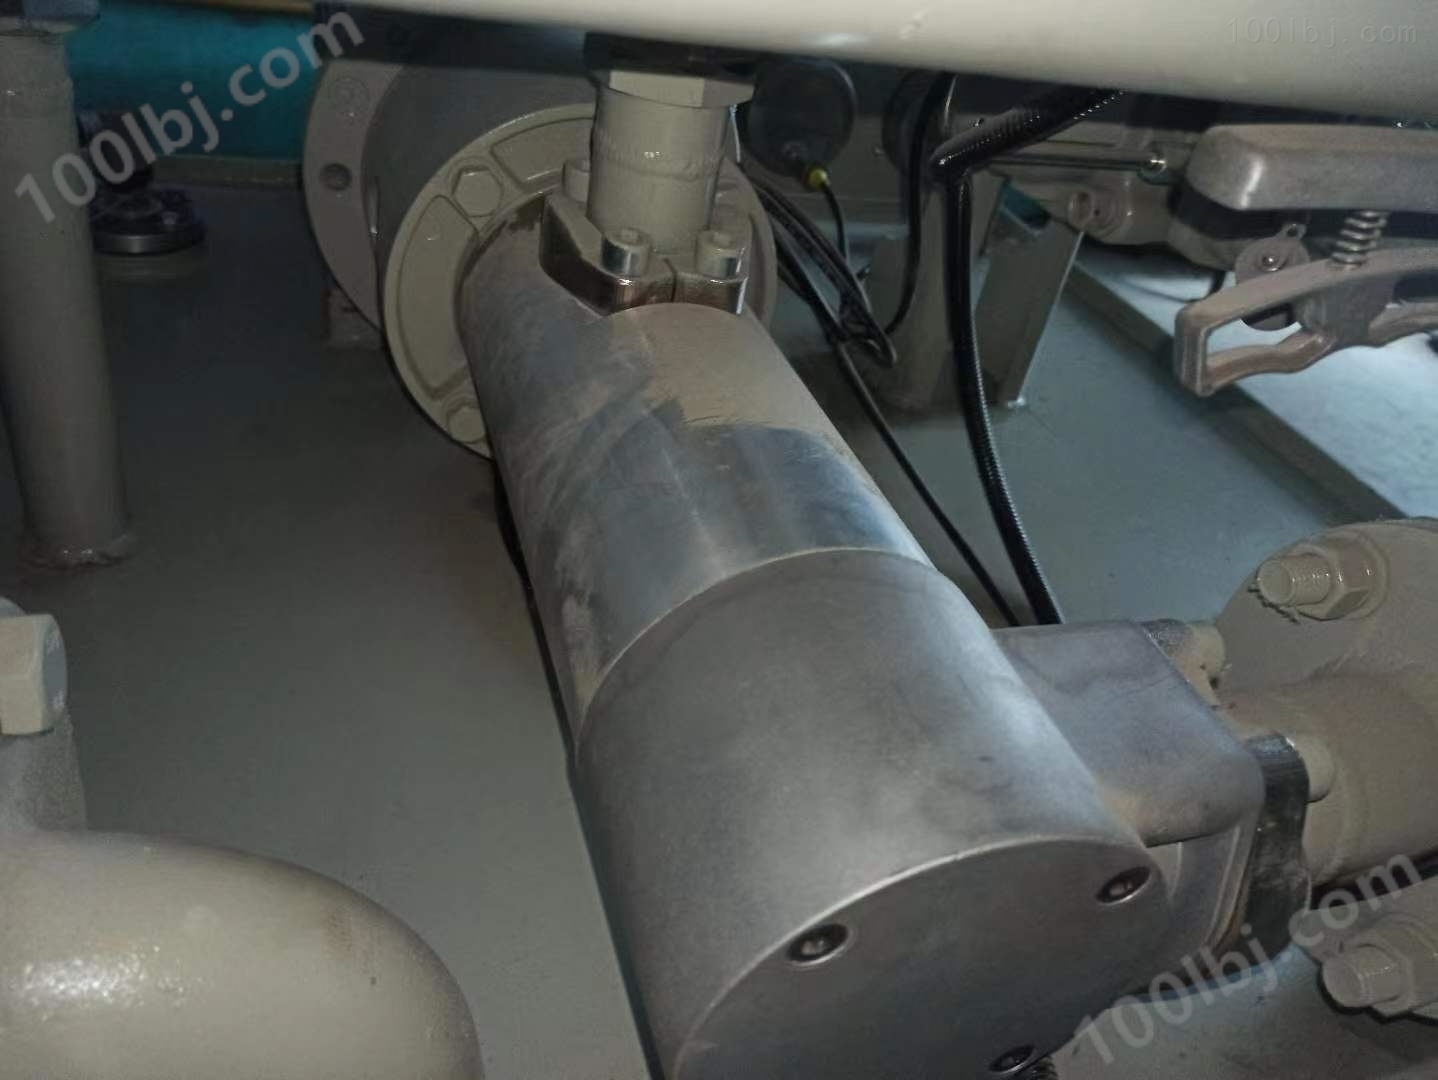 ZNYB01021602板坯连铸机稀油站低压油泵